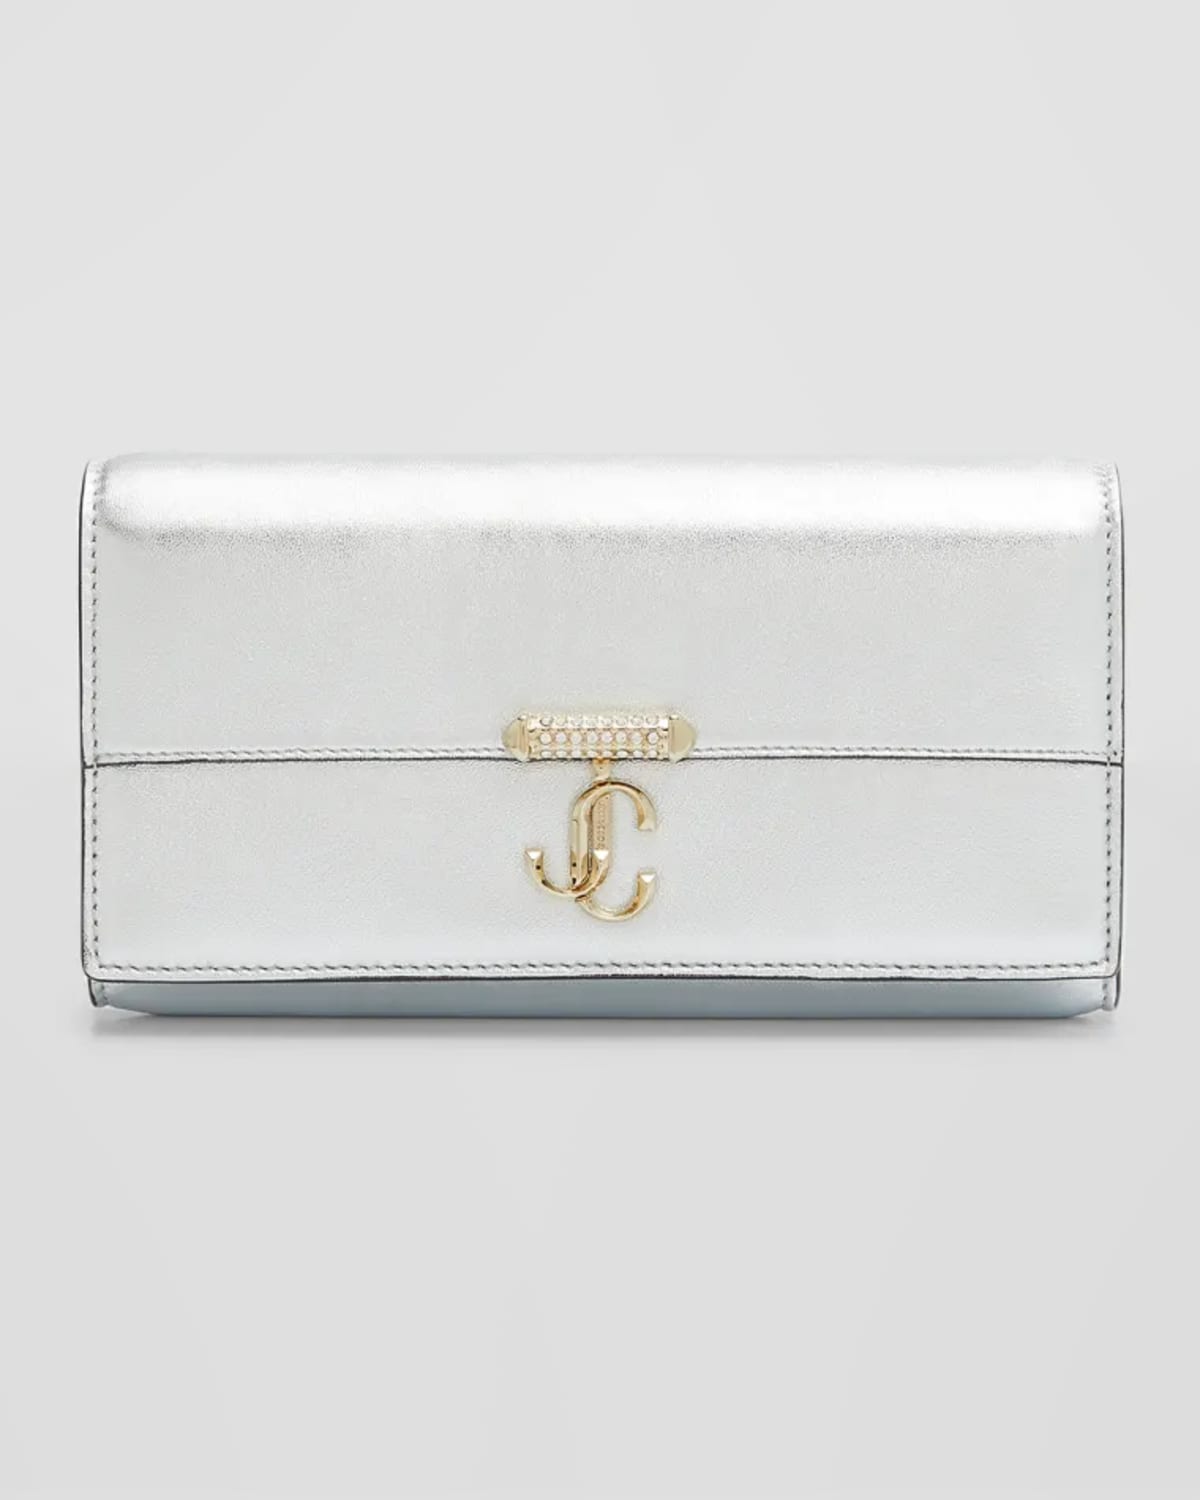 Varenne Metallic Leather Wallet with Embellished Strap